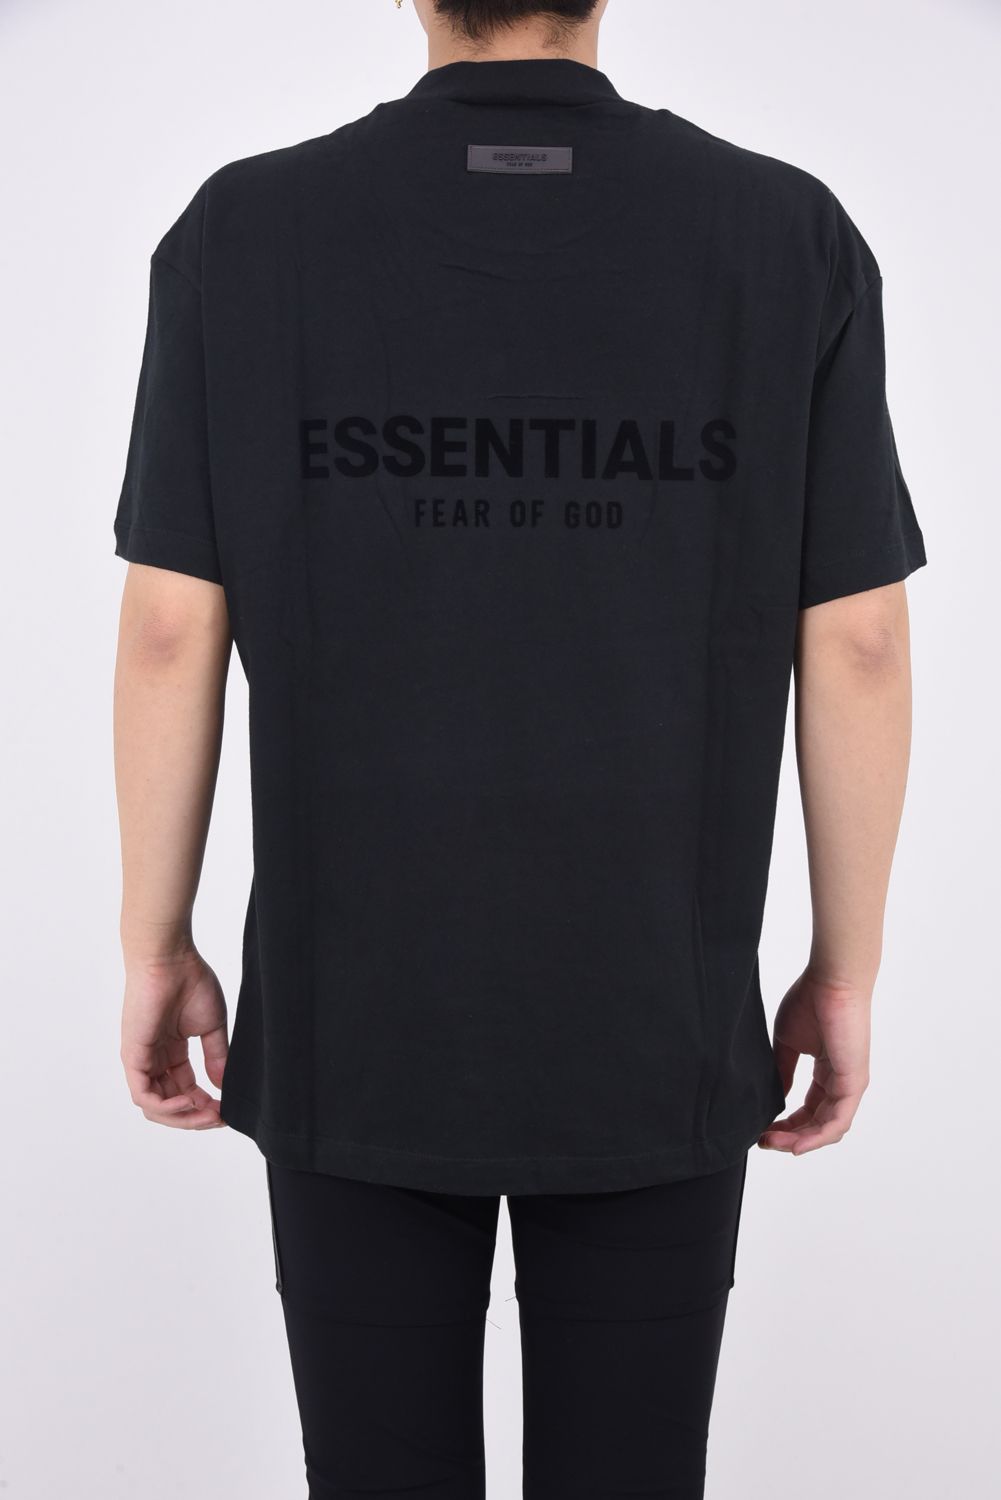 FOG ESSENTIALS バックロゴ Tシャツ グレー / Sサイズ